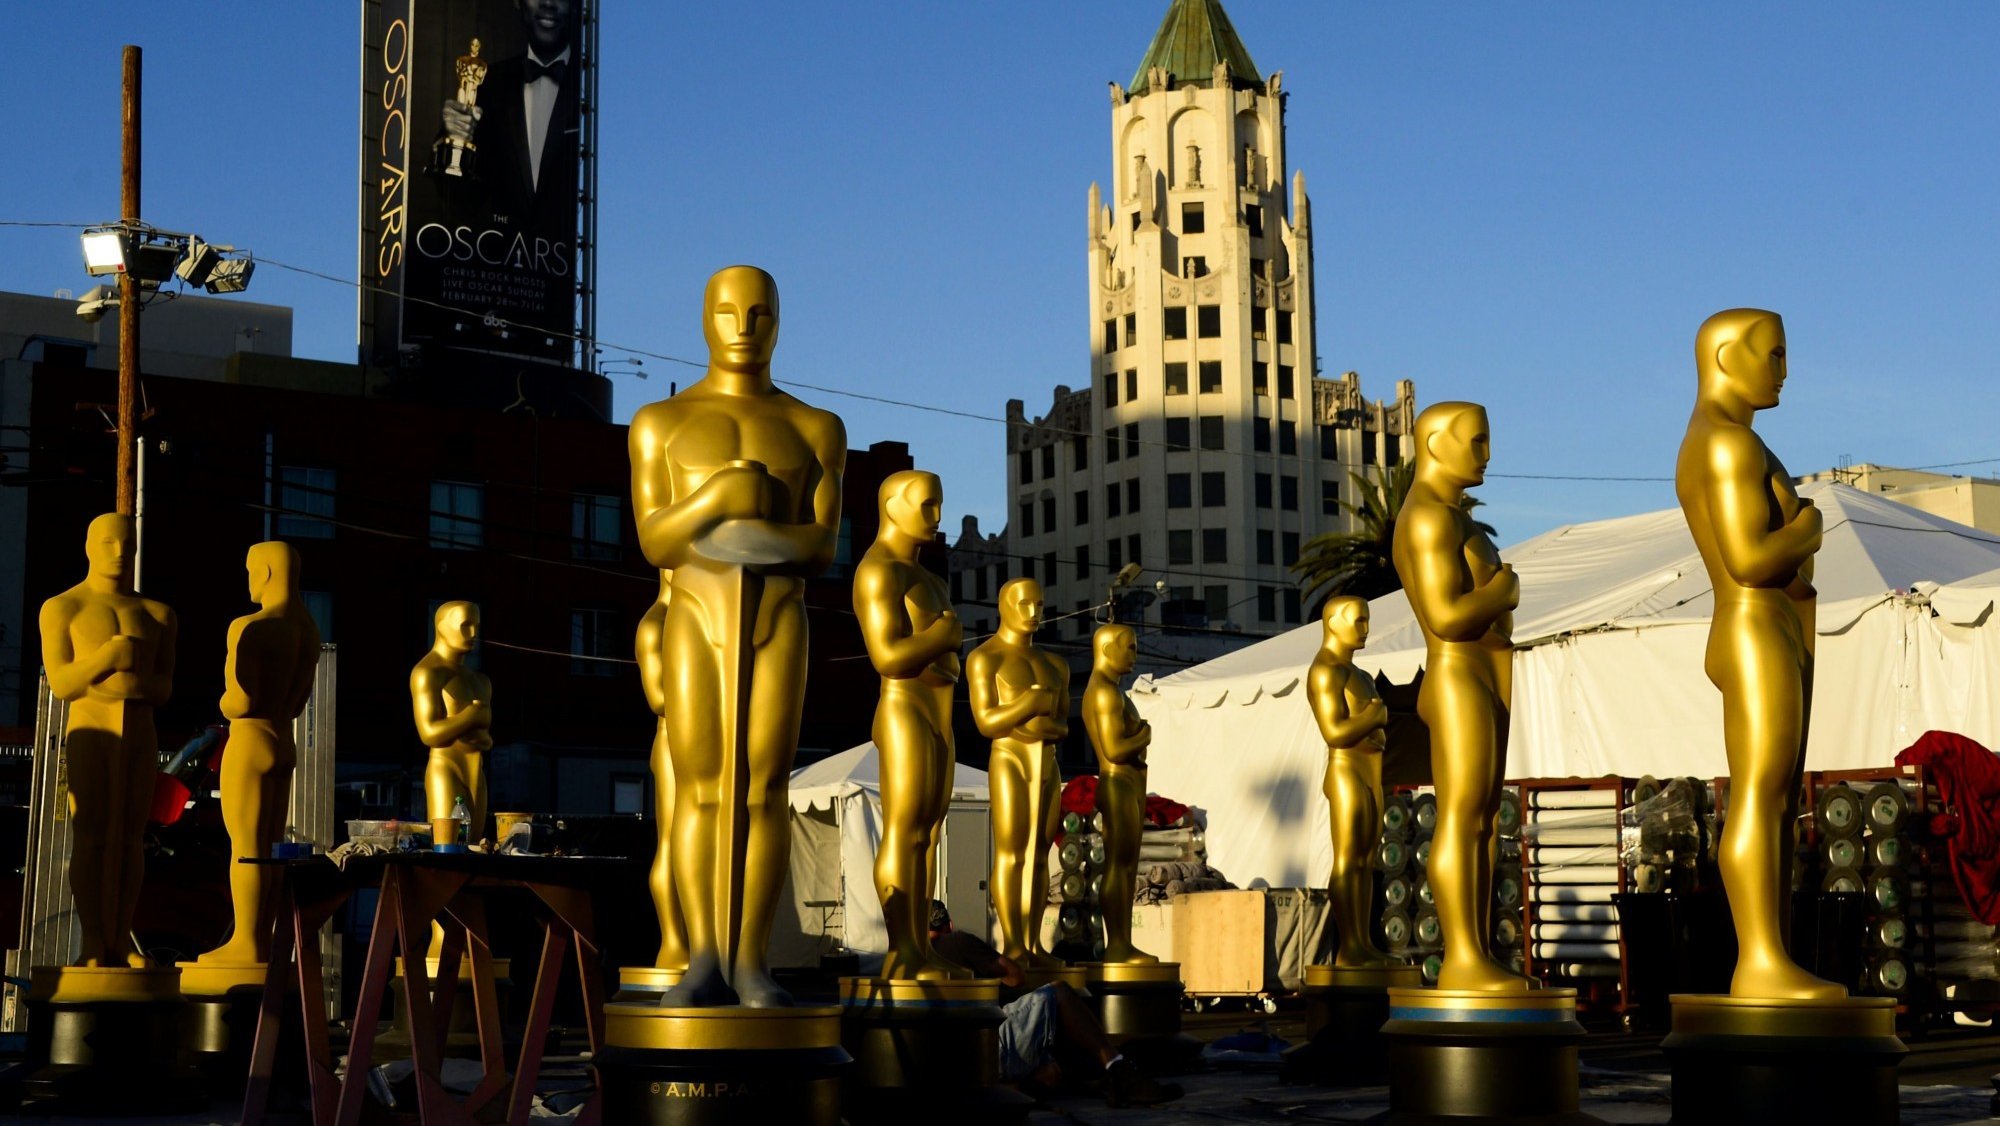 Para serem elegíveis para os Óscares, os filmes devem ter data de estreia entre 1 de março e 31 de dezembro de 2021